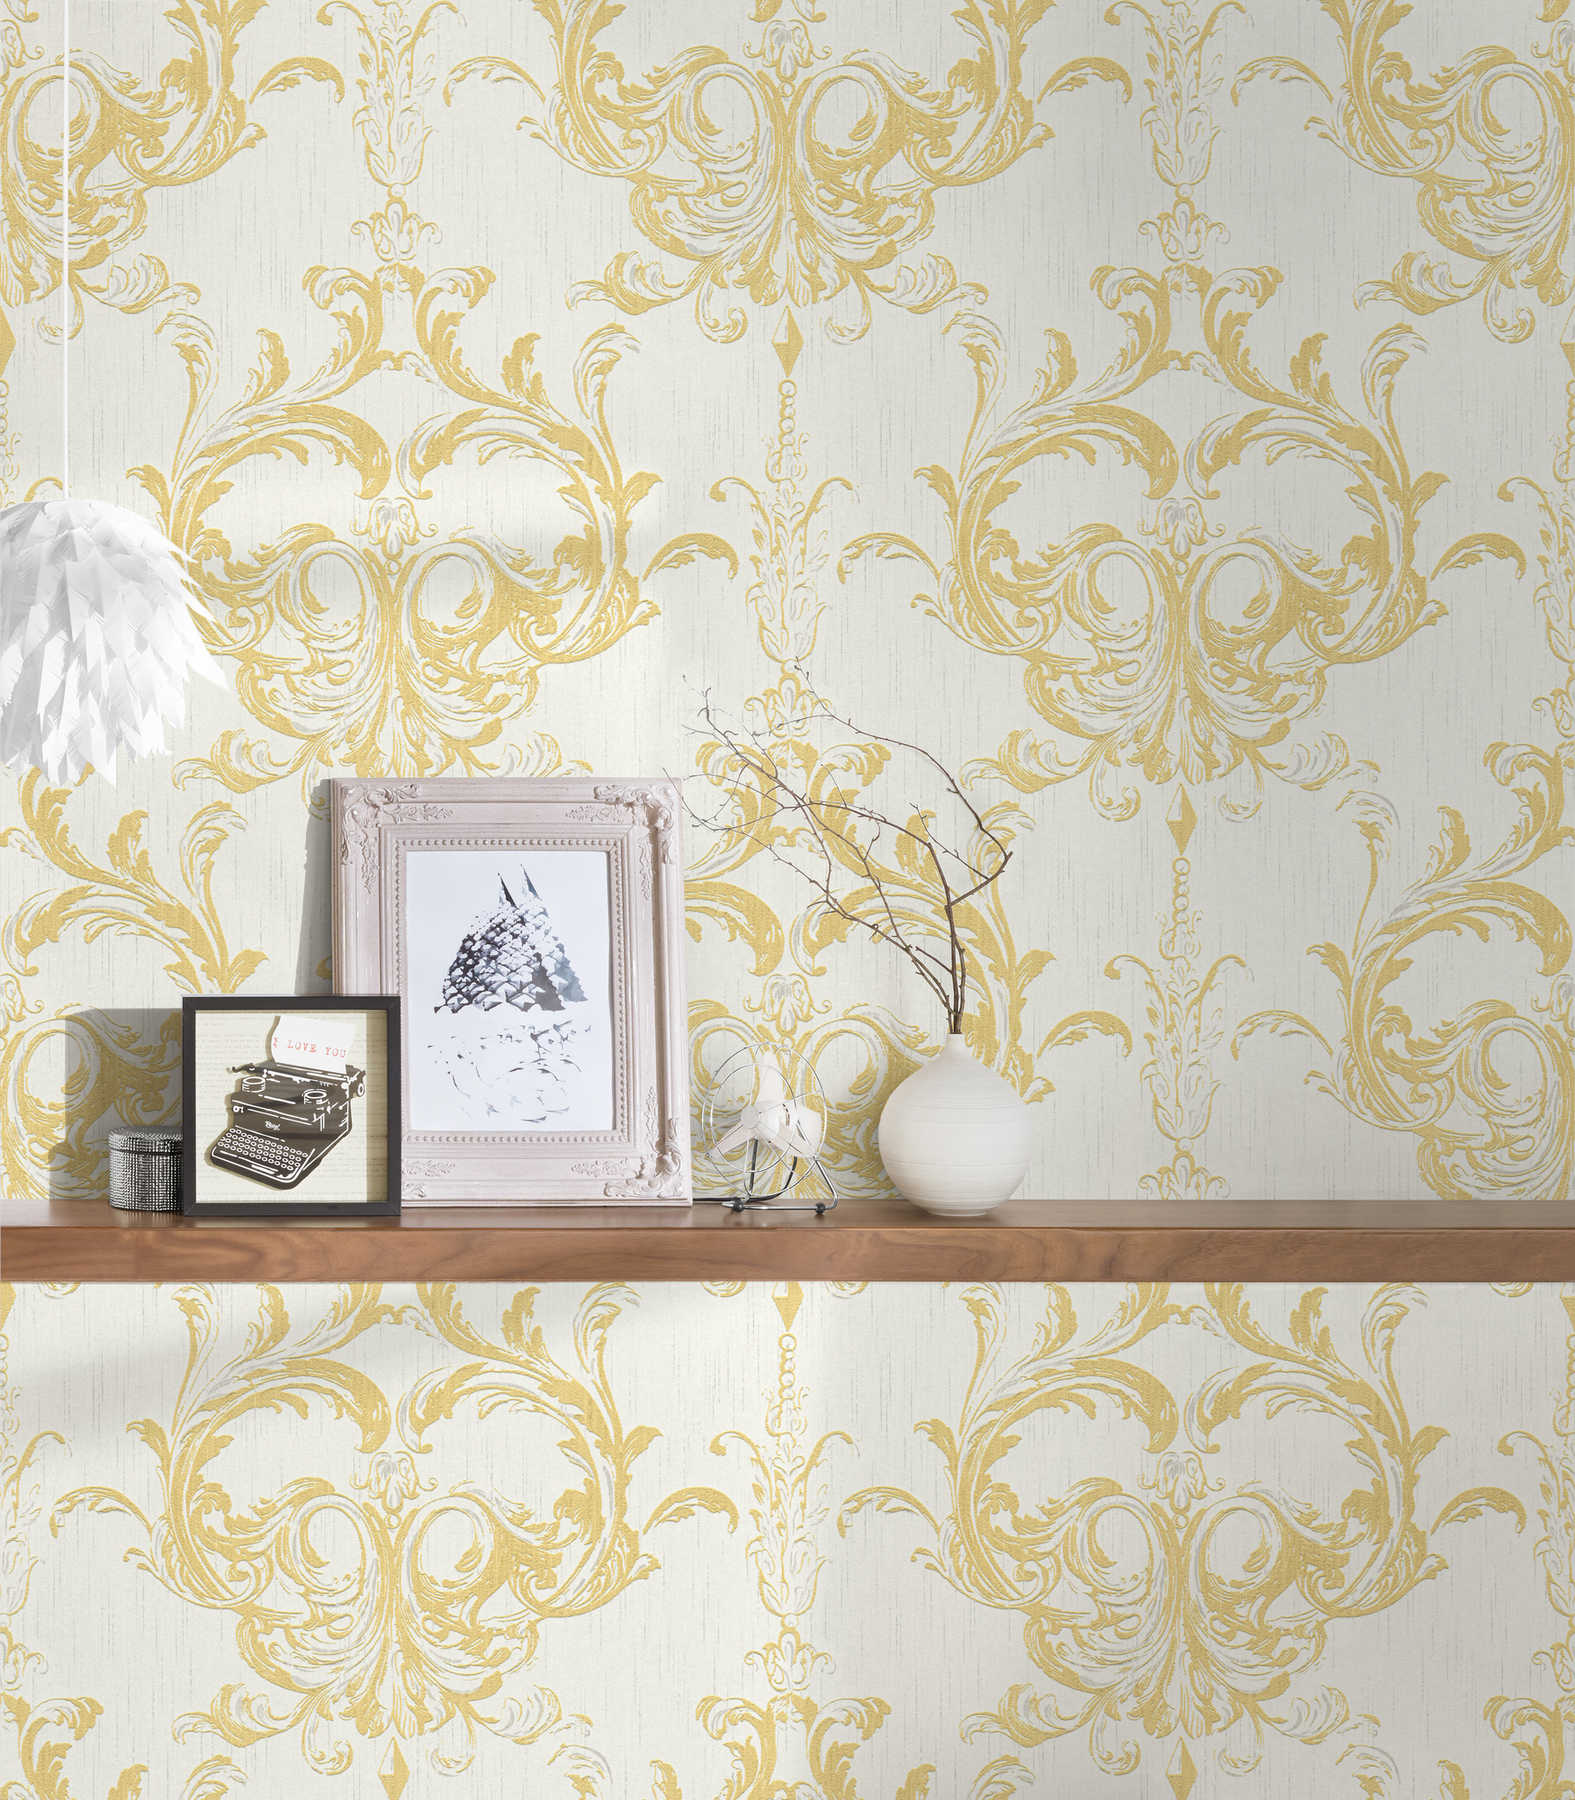             vliesbehang historisch ornament ontwerp met structuur effect - goud, wit
        